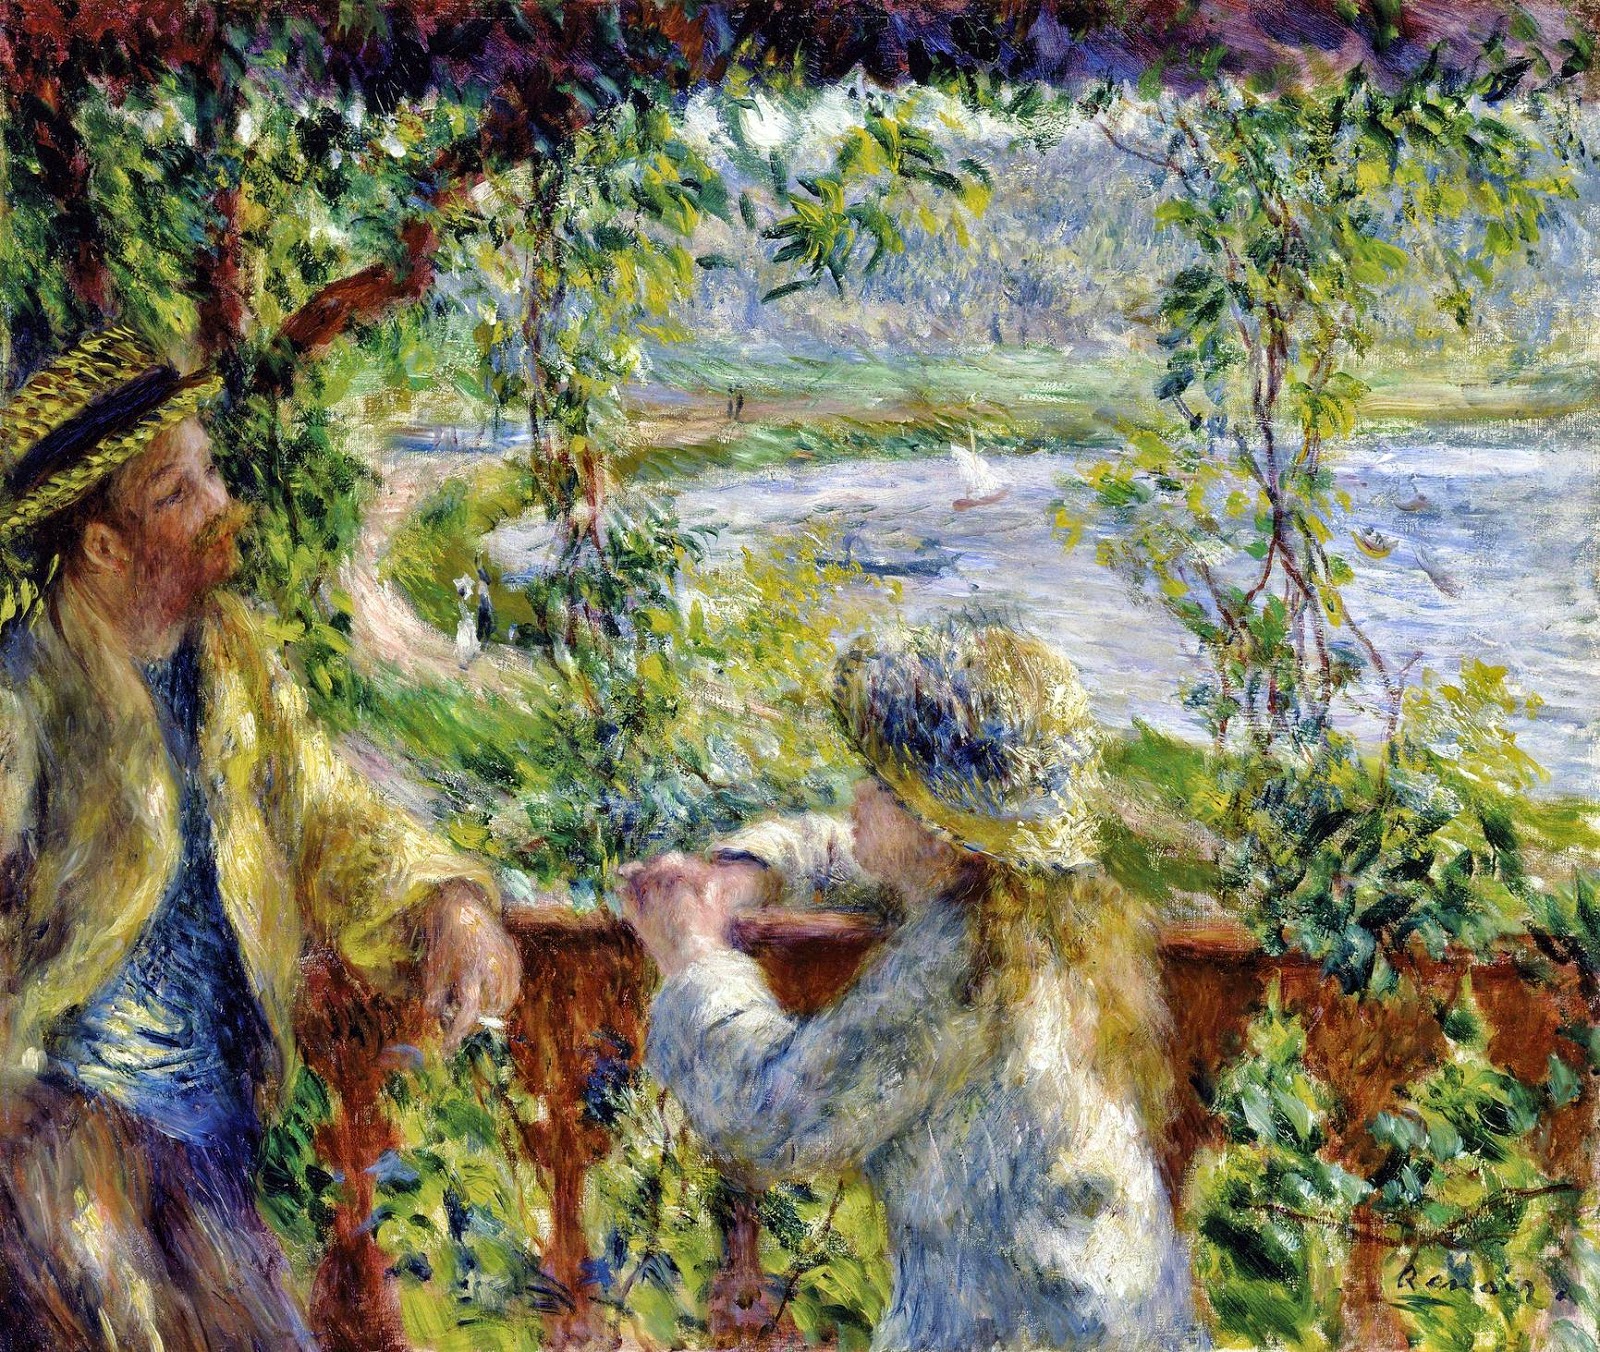 Pierre+Auguste+Renoir-1841-1-19 (290).jpg